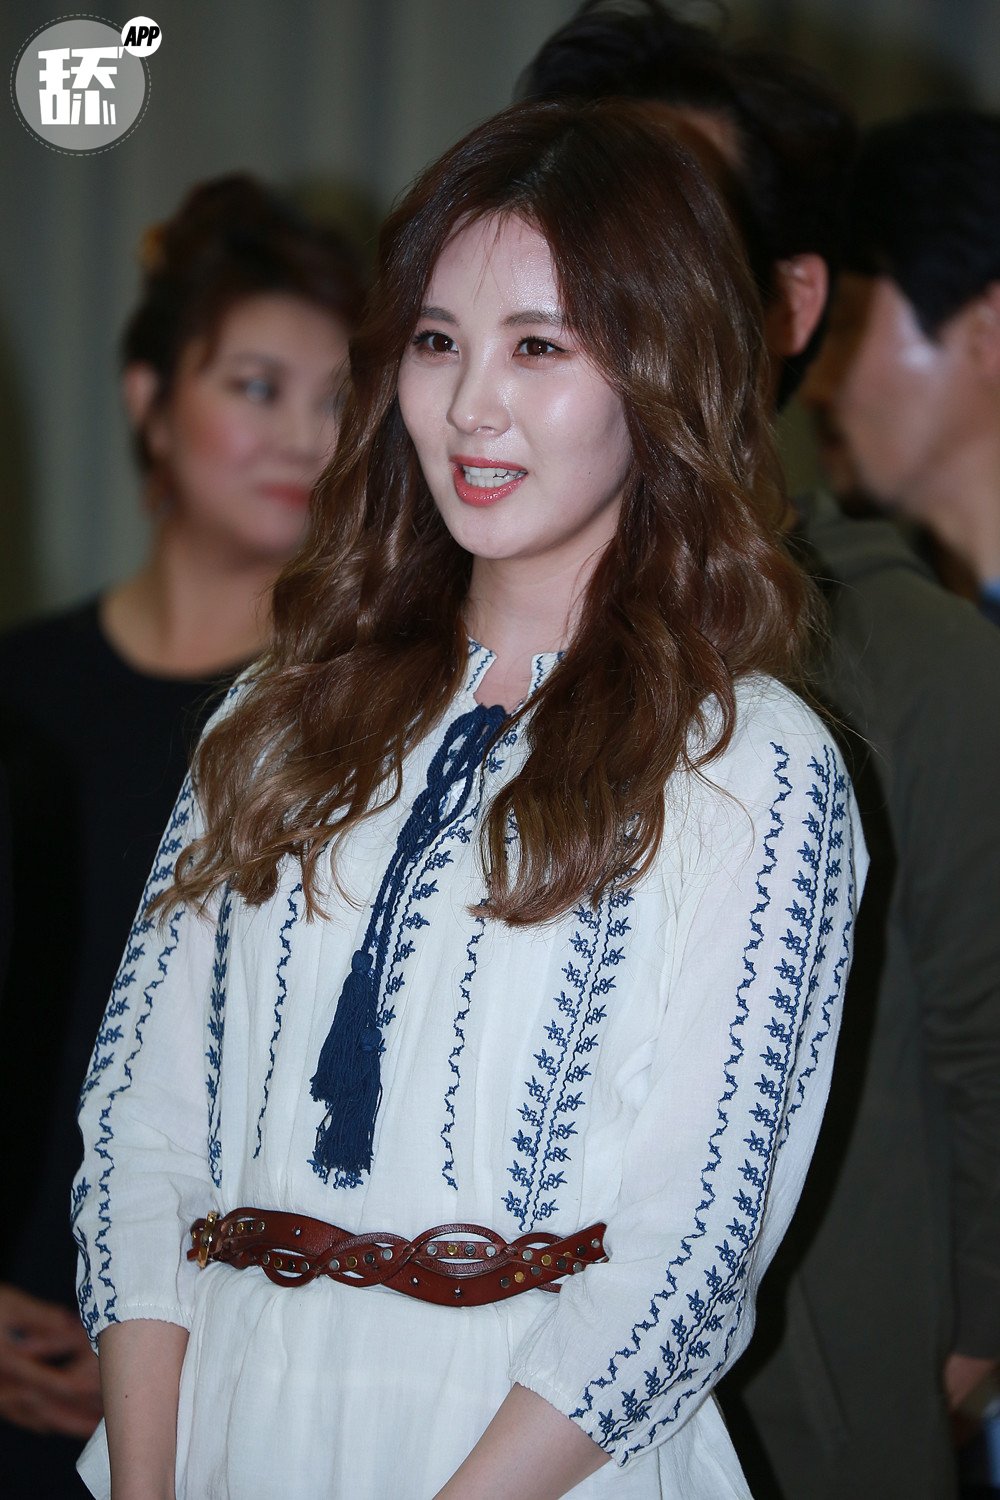 [OTHER][08-12-2015]SeoHyun tham dự vở nhạc kịch mới mang tên "Mamma Mia!" - Page 2 B5rznvw63k-3000x3000